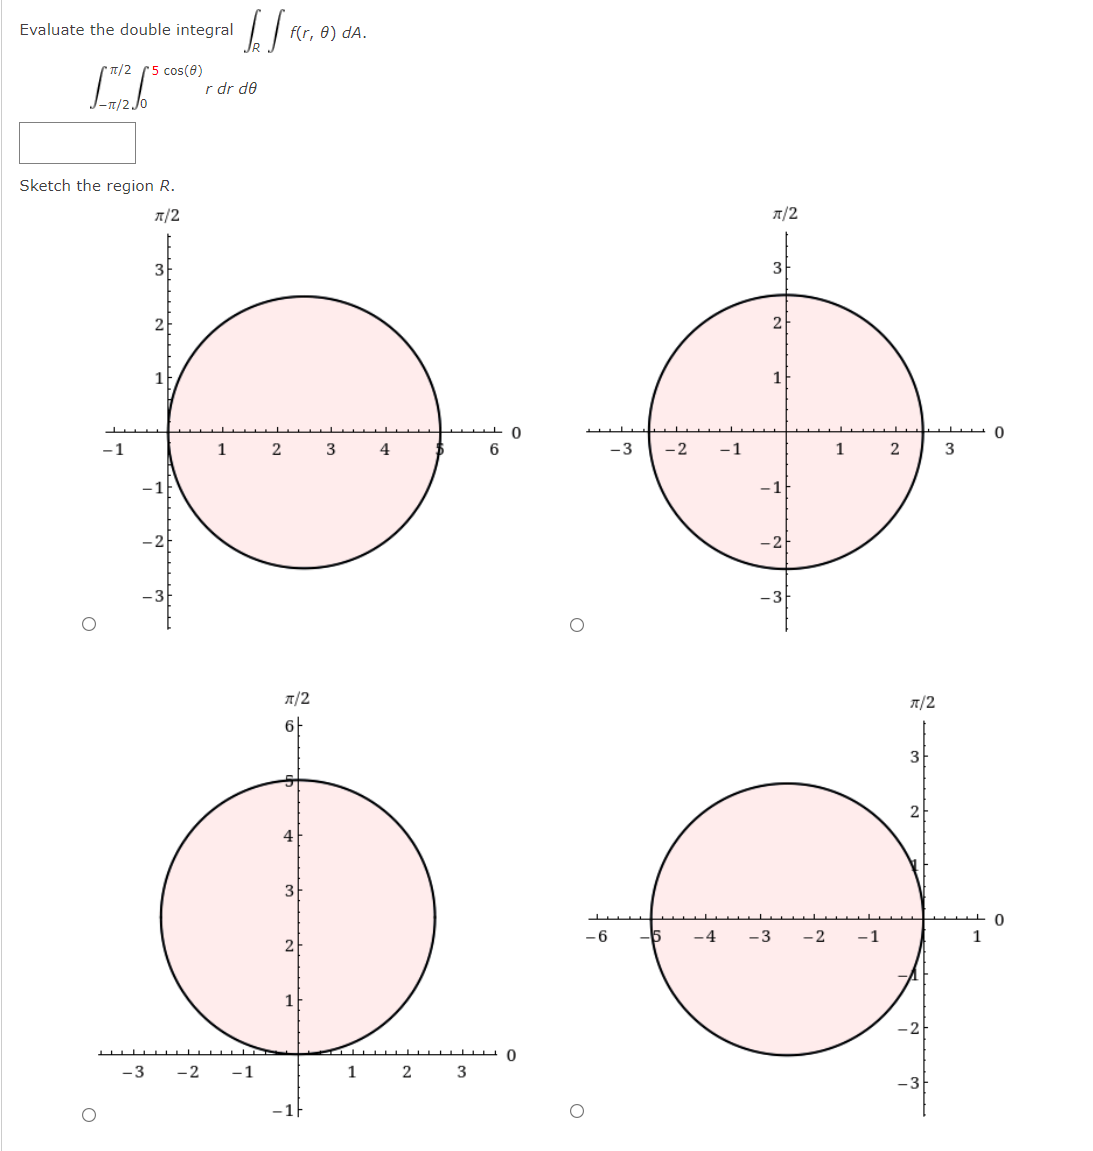 Evaluate the double integral
f(r, 0) dA.
* T/2 (5 cos(8)
r dr de
Sketch the region R.
A/2
T/2
3
3F
2
-1
1
2
4
-3
-2
-1
1
3
-1
T/2
A/2
6F
3
2
4
3
- 6
-4
-3
-2
-1
2
1
-2
-3
-2
-1
2
3
-3
-1F
1,
